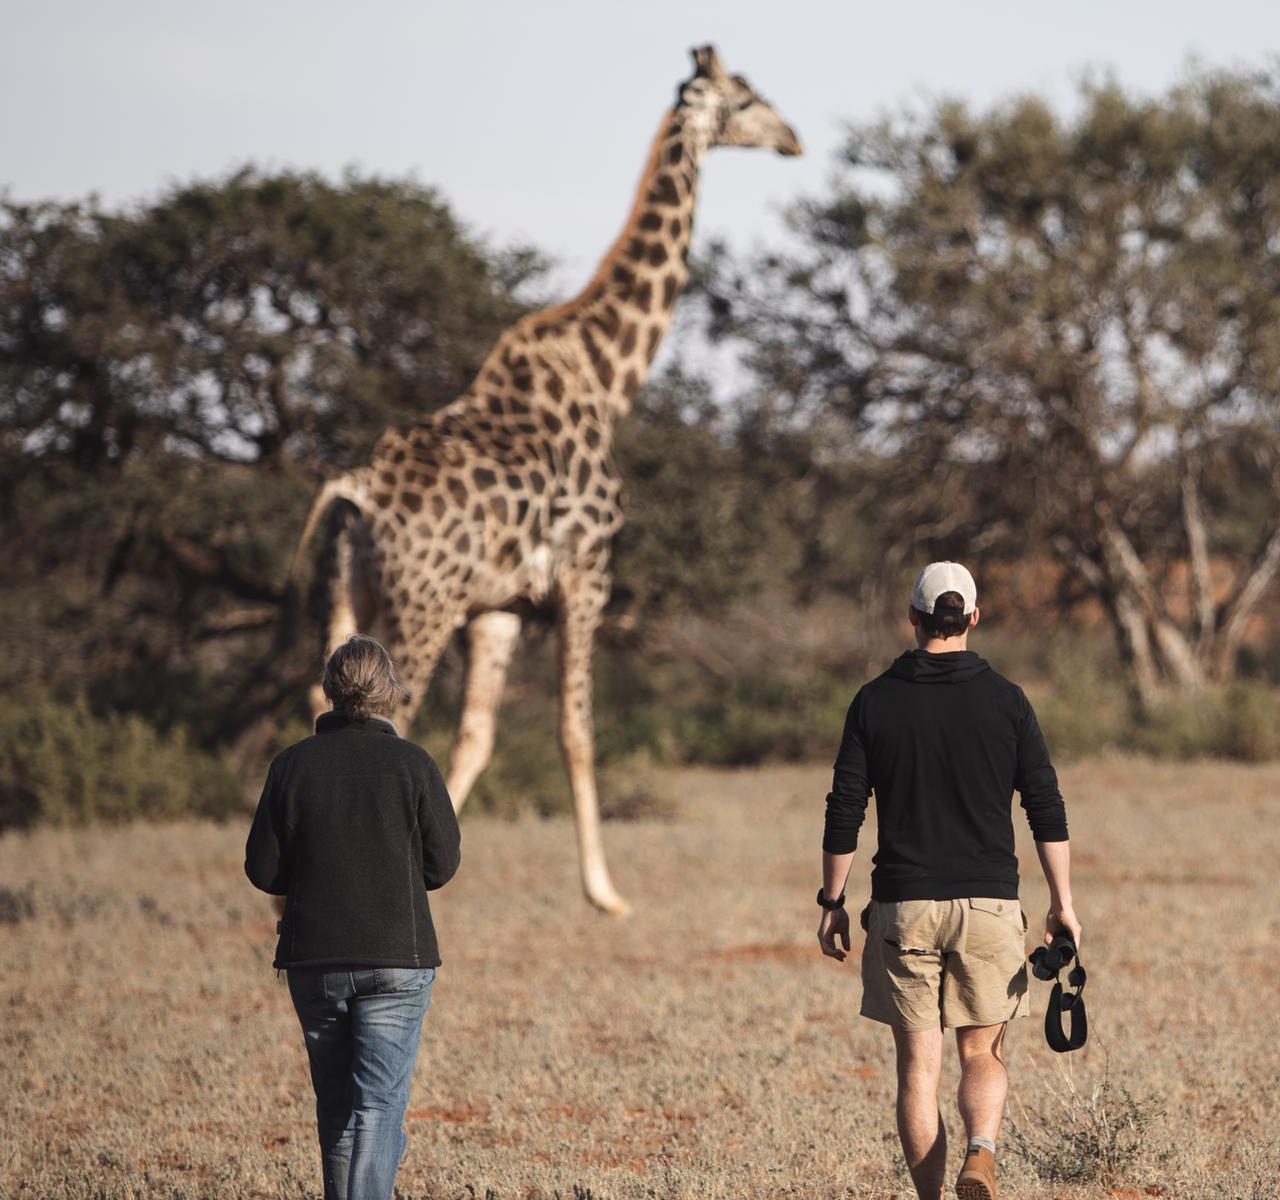 Two people walking toward a giraffe